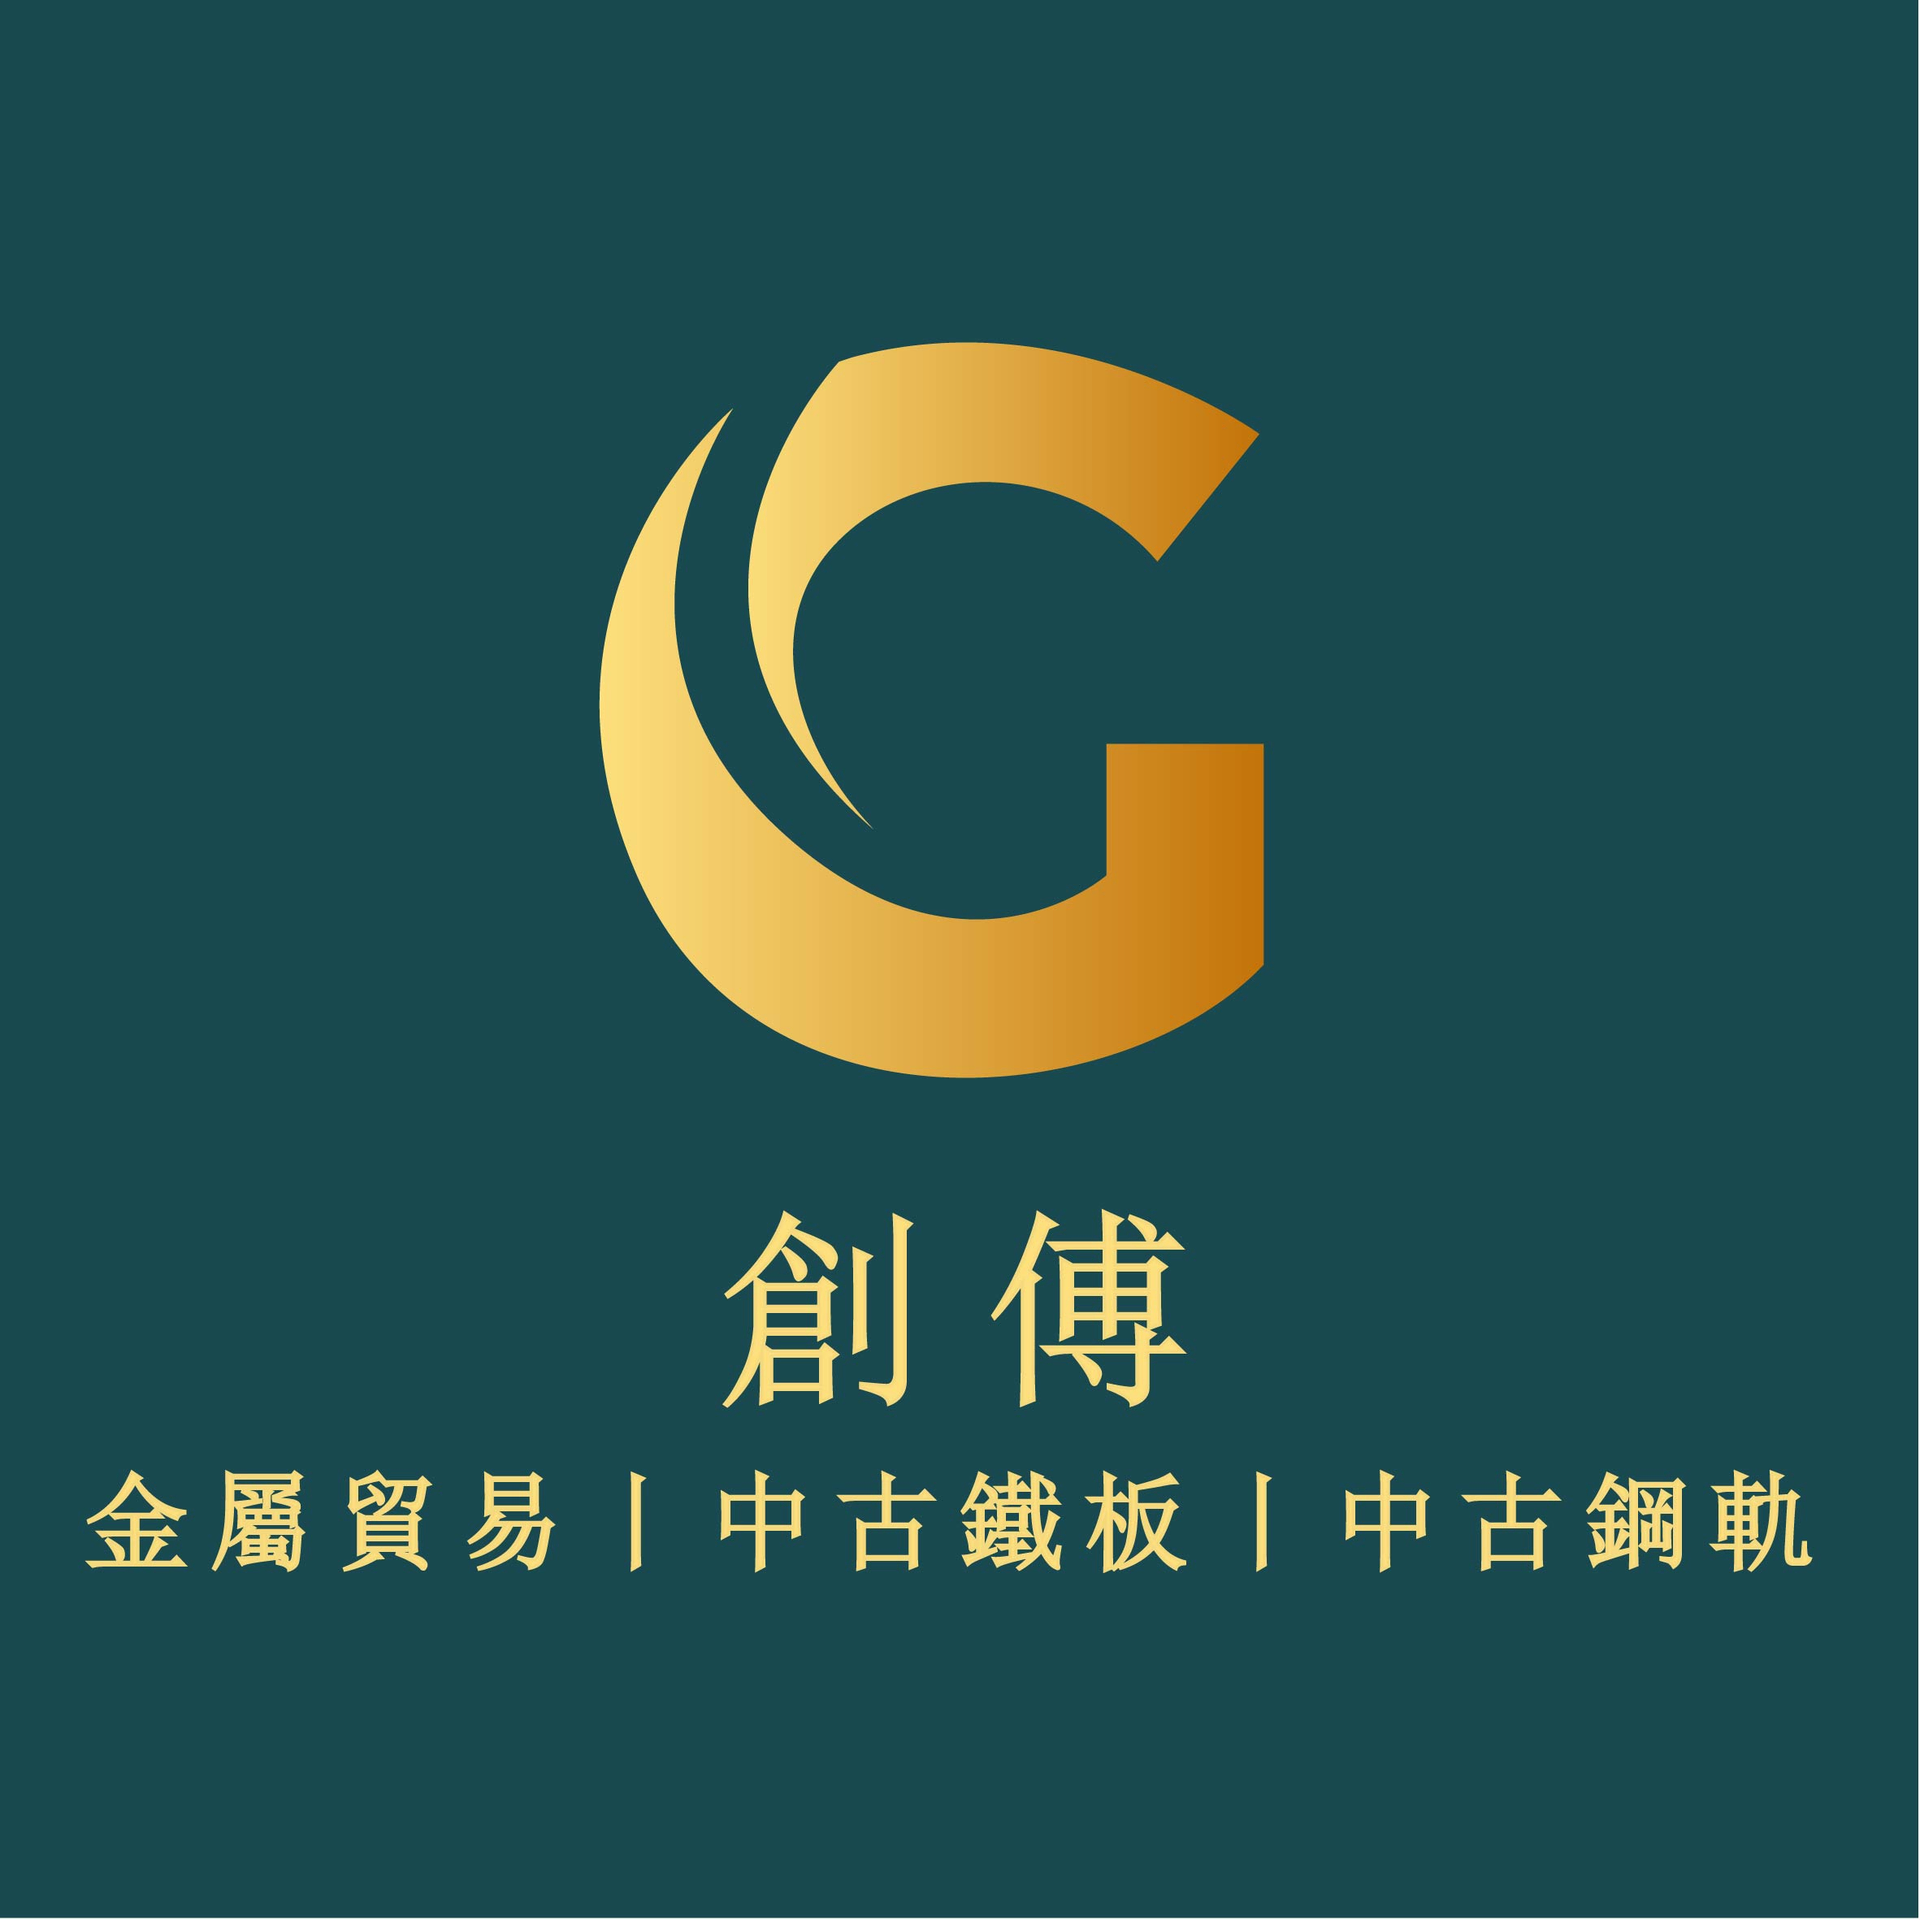 創傅有限公司Logo